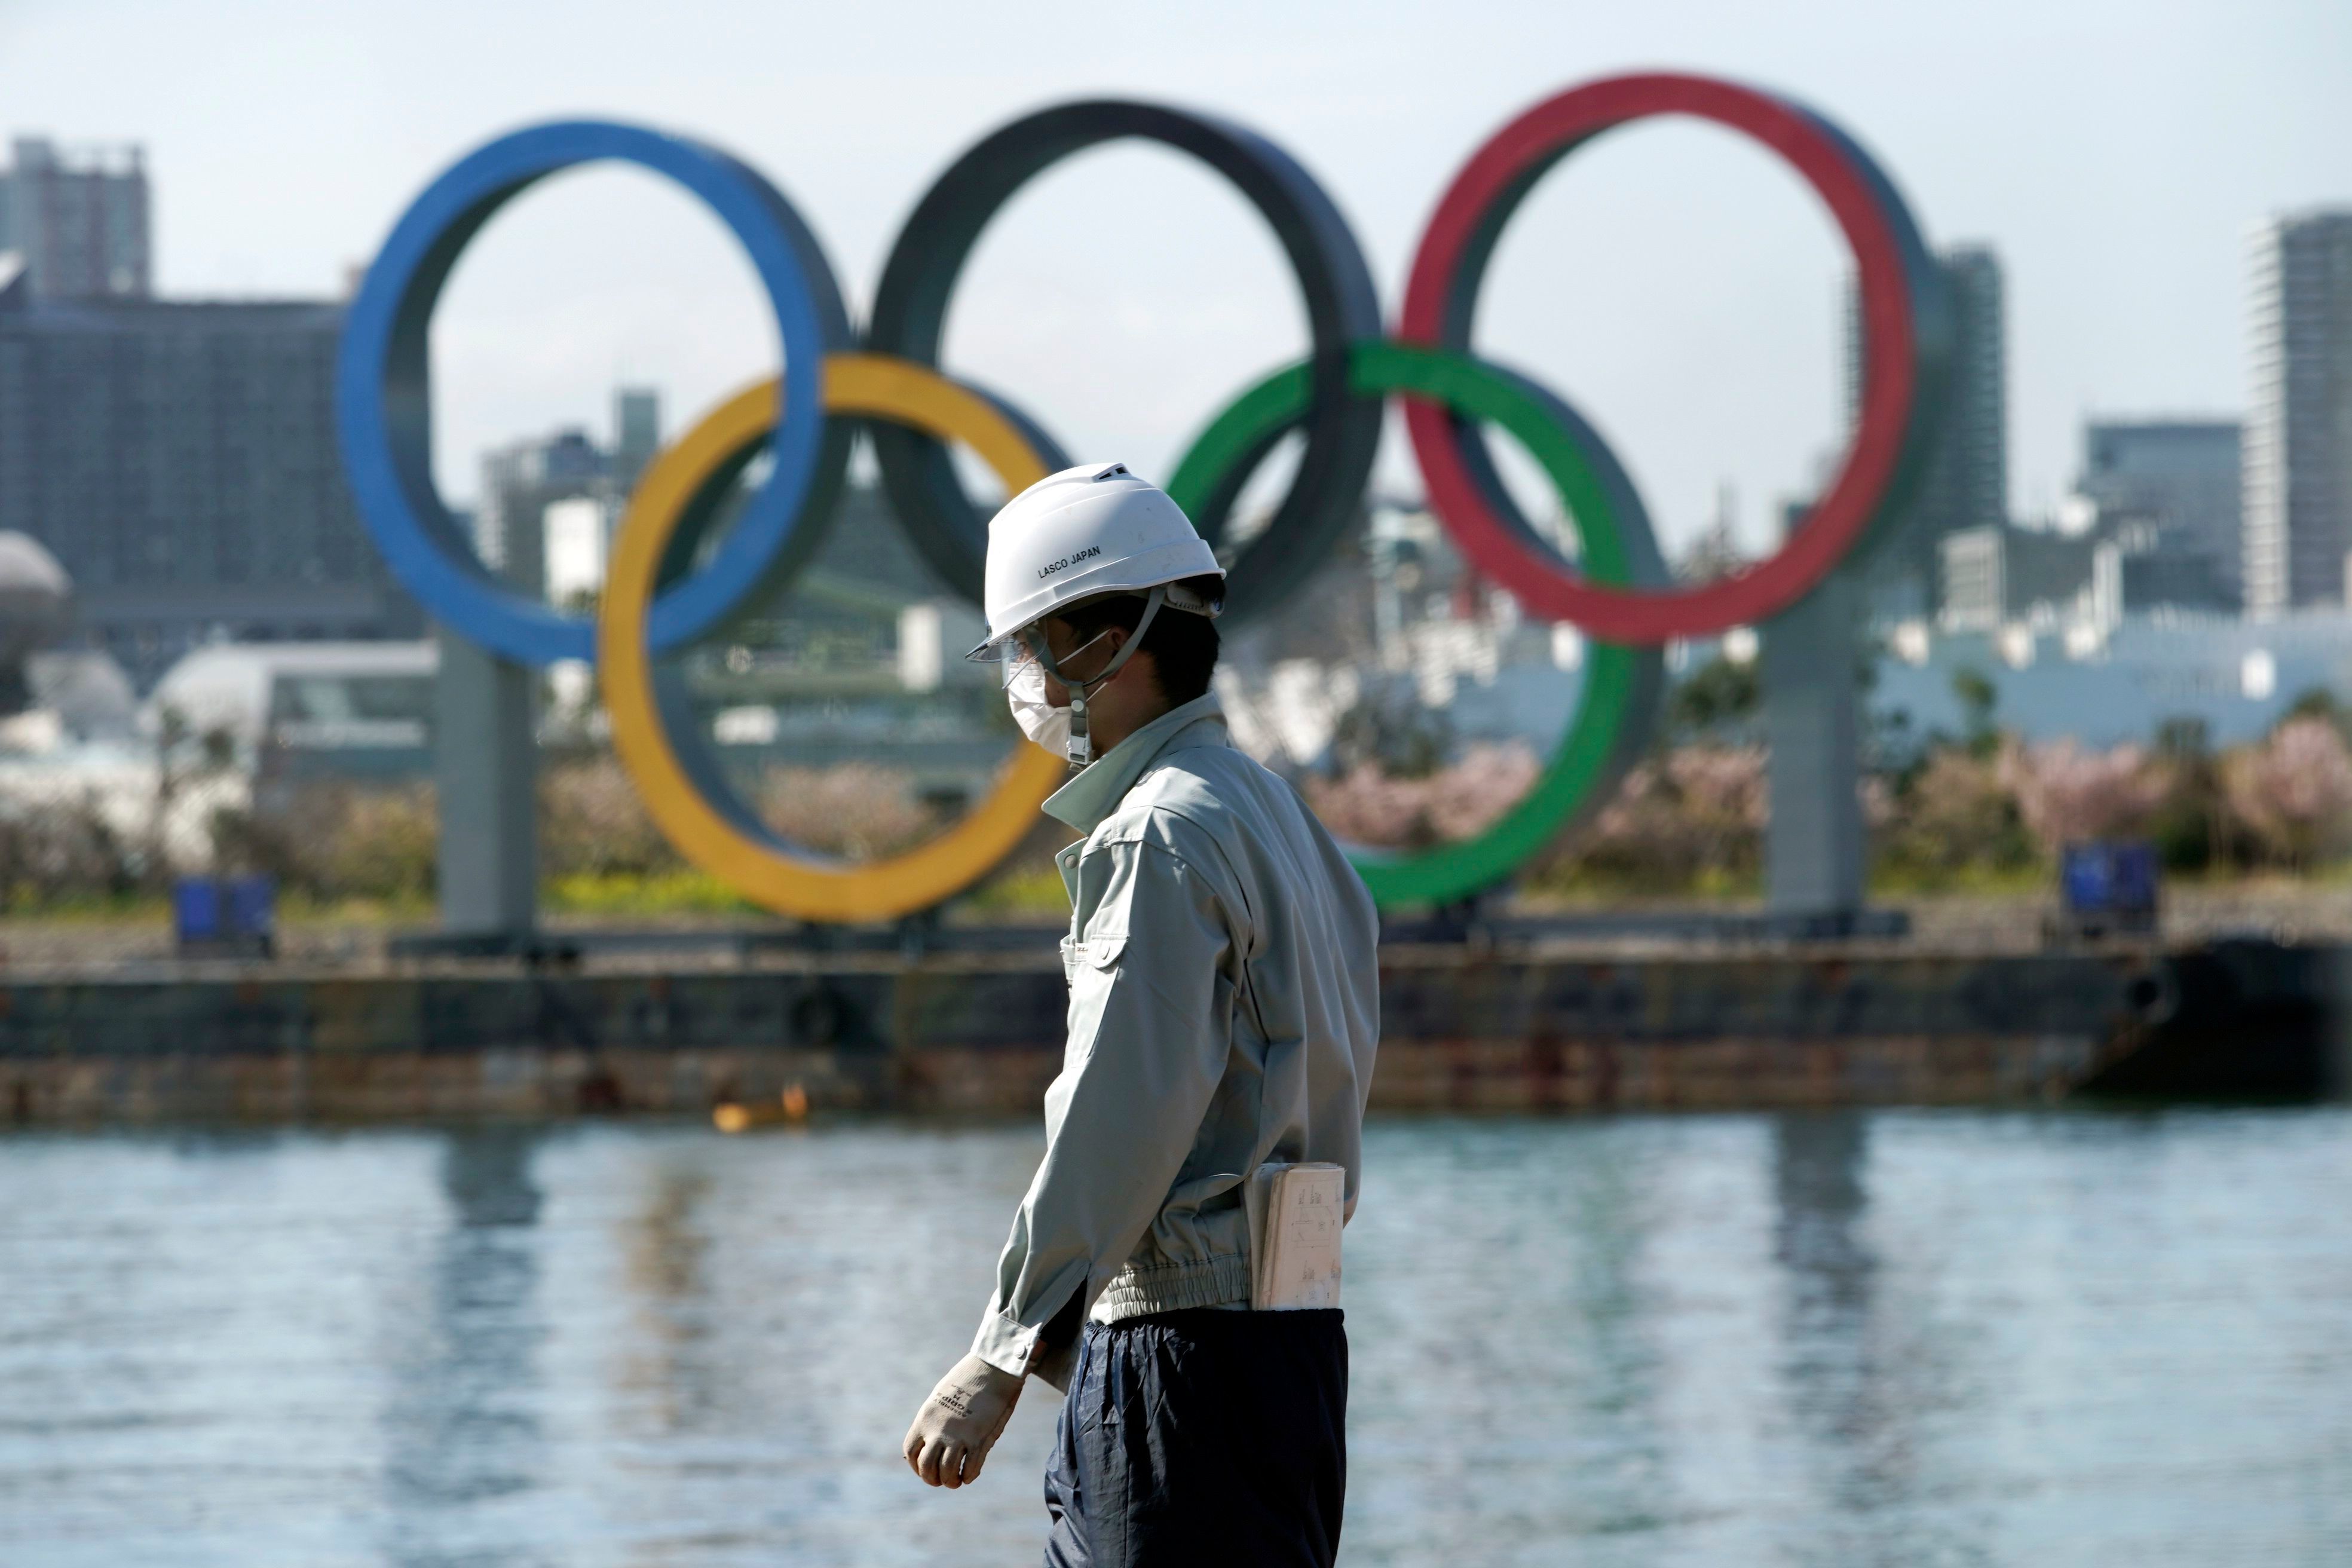 Один большой турнир из-за коронавируса пока еще не отменен. Что будет с Олимпиадой-2020?